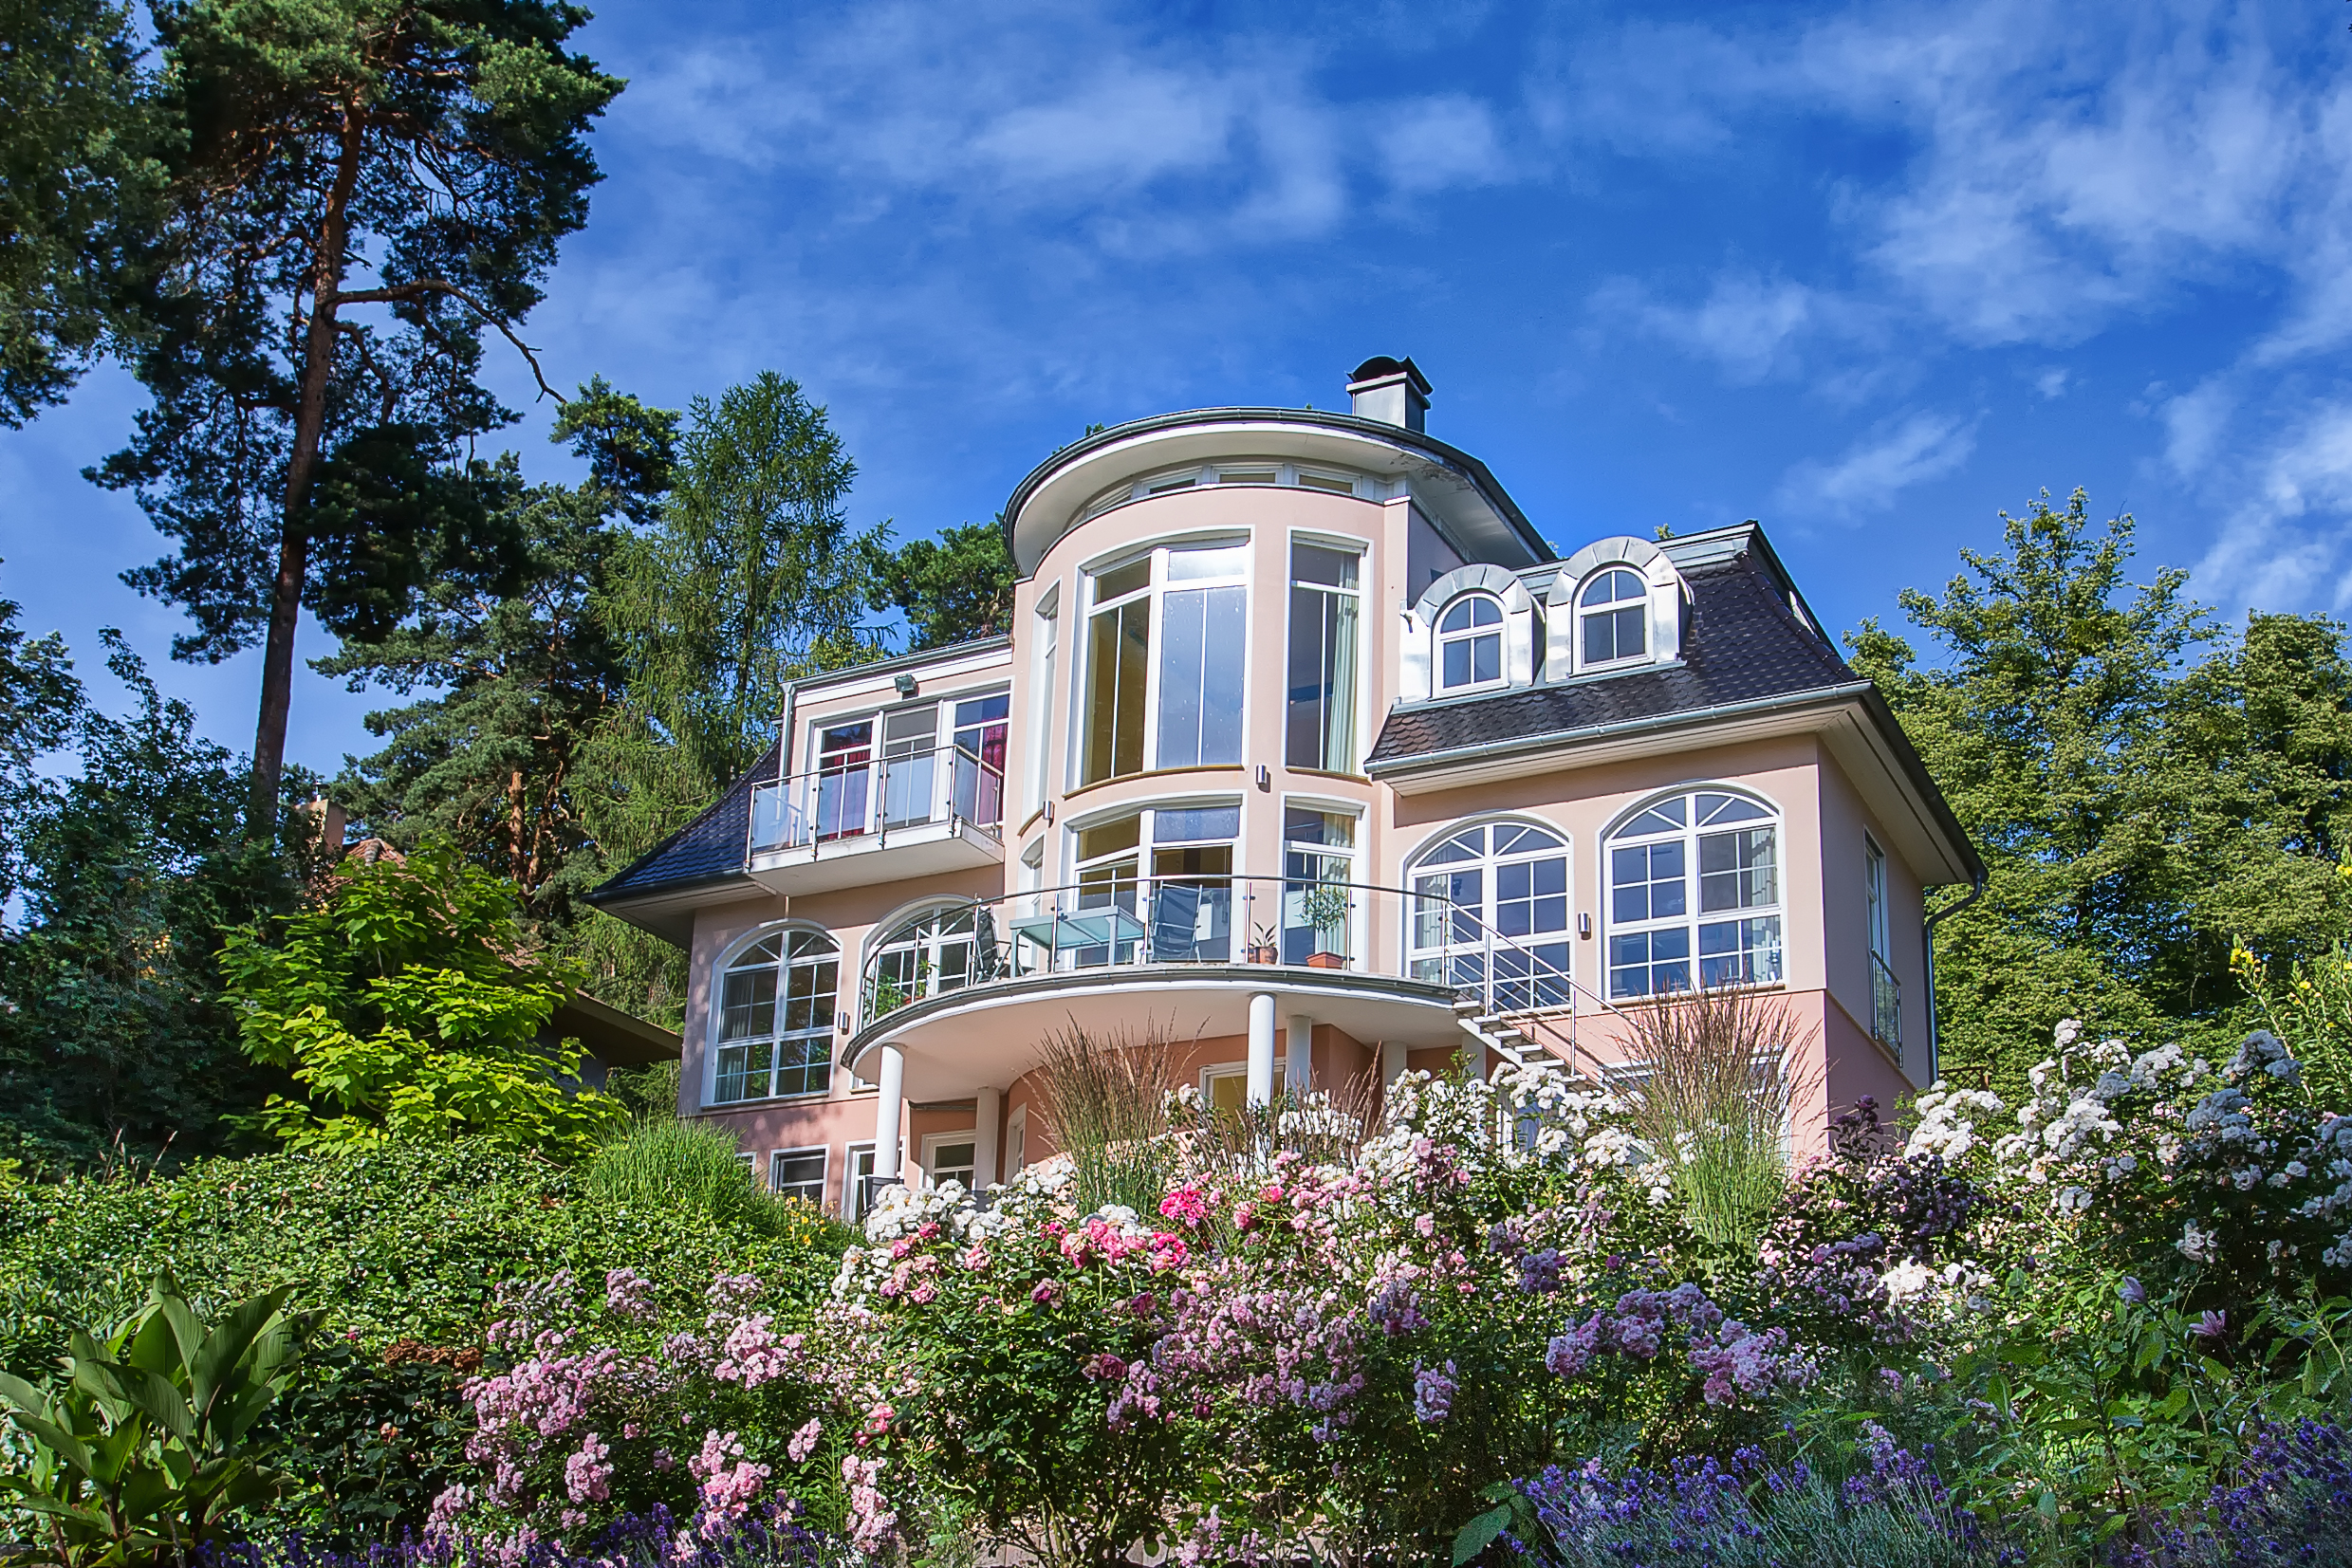 Villa auf Wassergrundstück in Potsdam verkauft